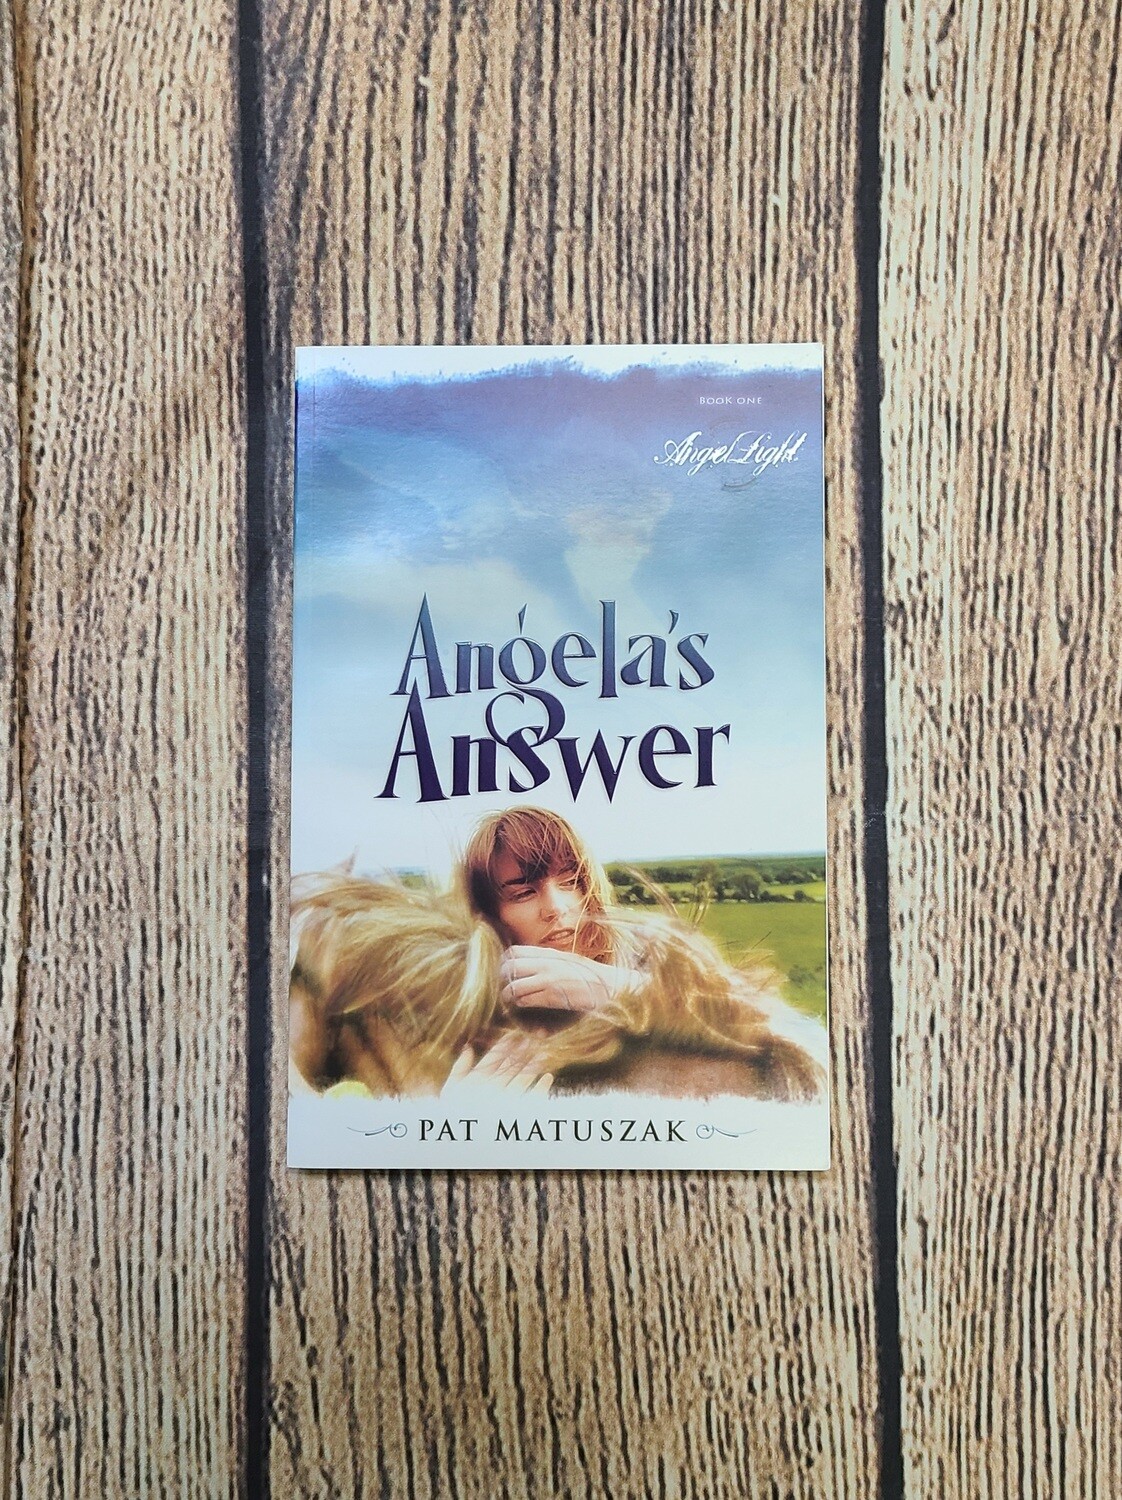 Angela's Answer by Pat Matuszak